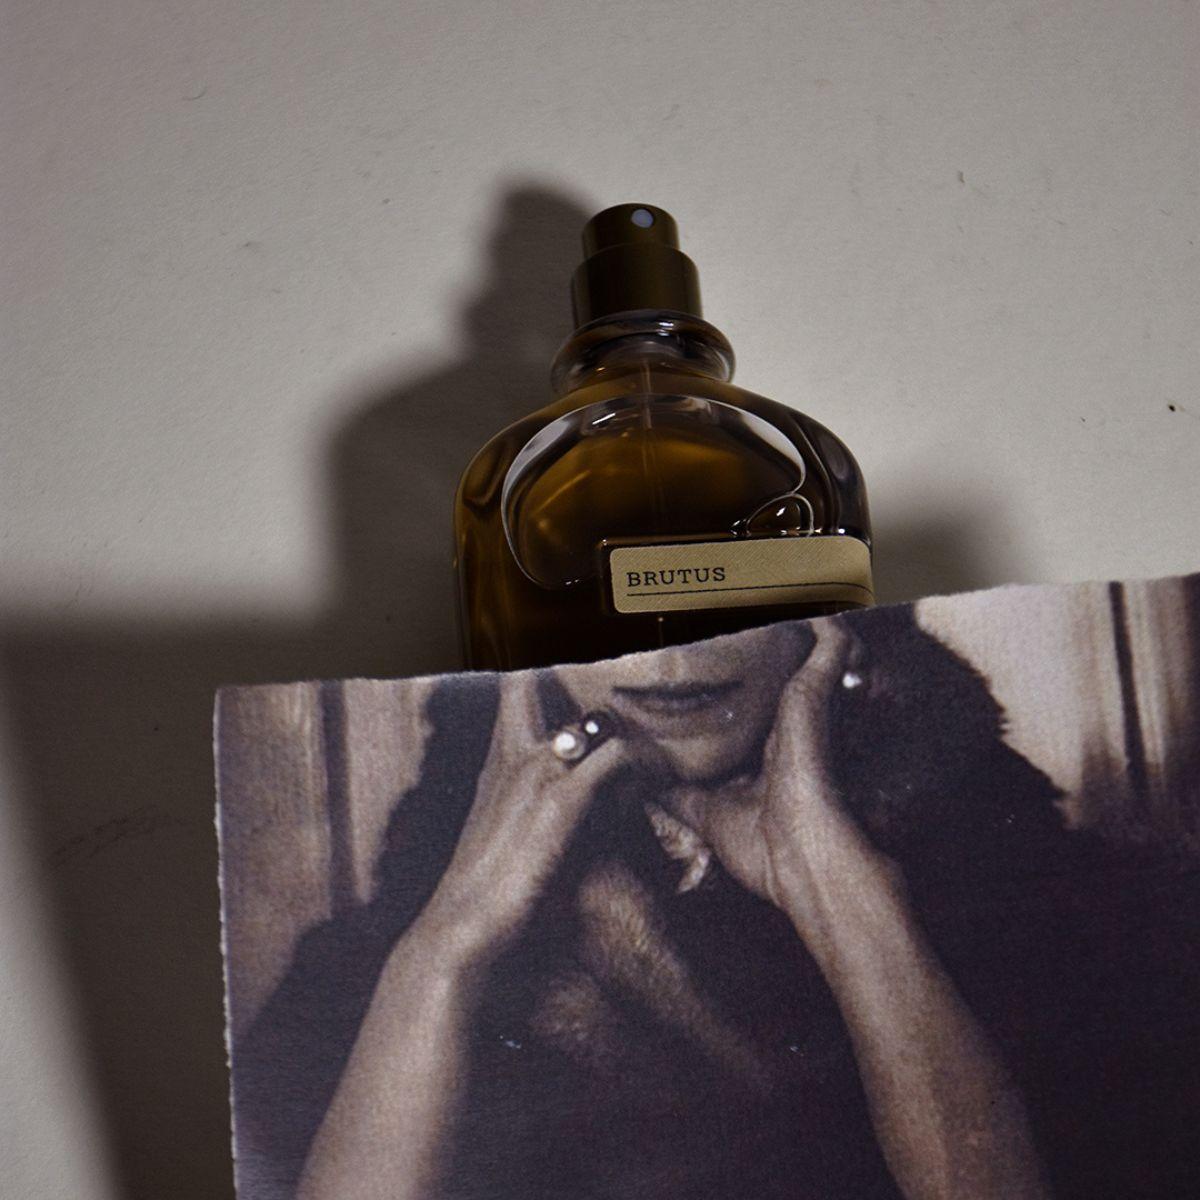 Afbeelding van Brutus extrait de parfum 50 ml van het parfum merk Orto Parisi